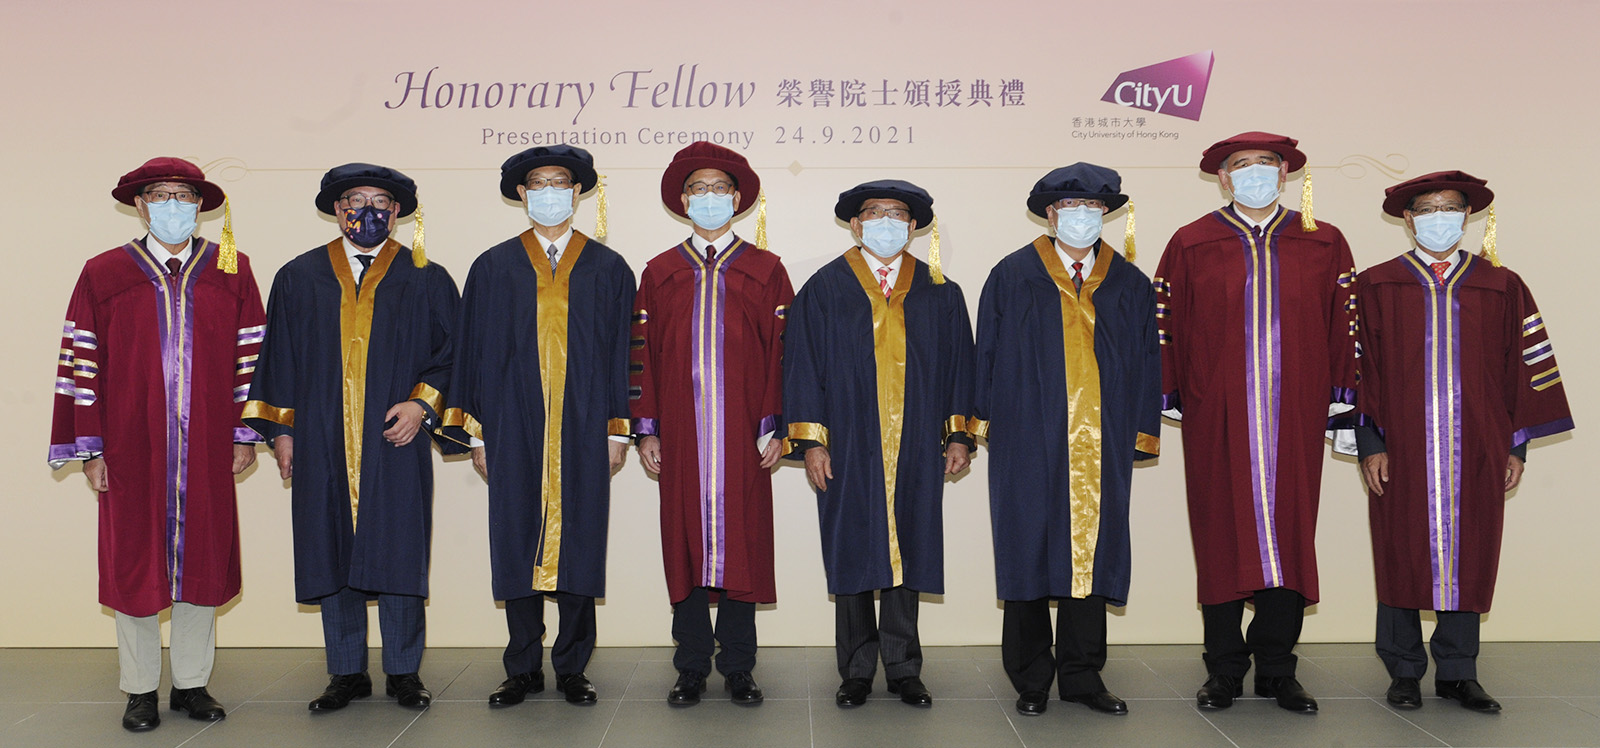 （左起）郭位校長、史立德博士、王明鑫先生、鍾瑞明博士、楊志雄先生、葉毓強教授、黃嘉純先生、錢應安先生。